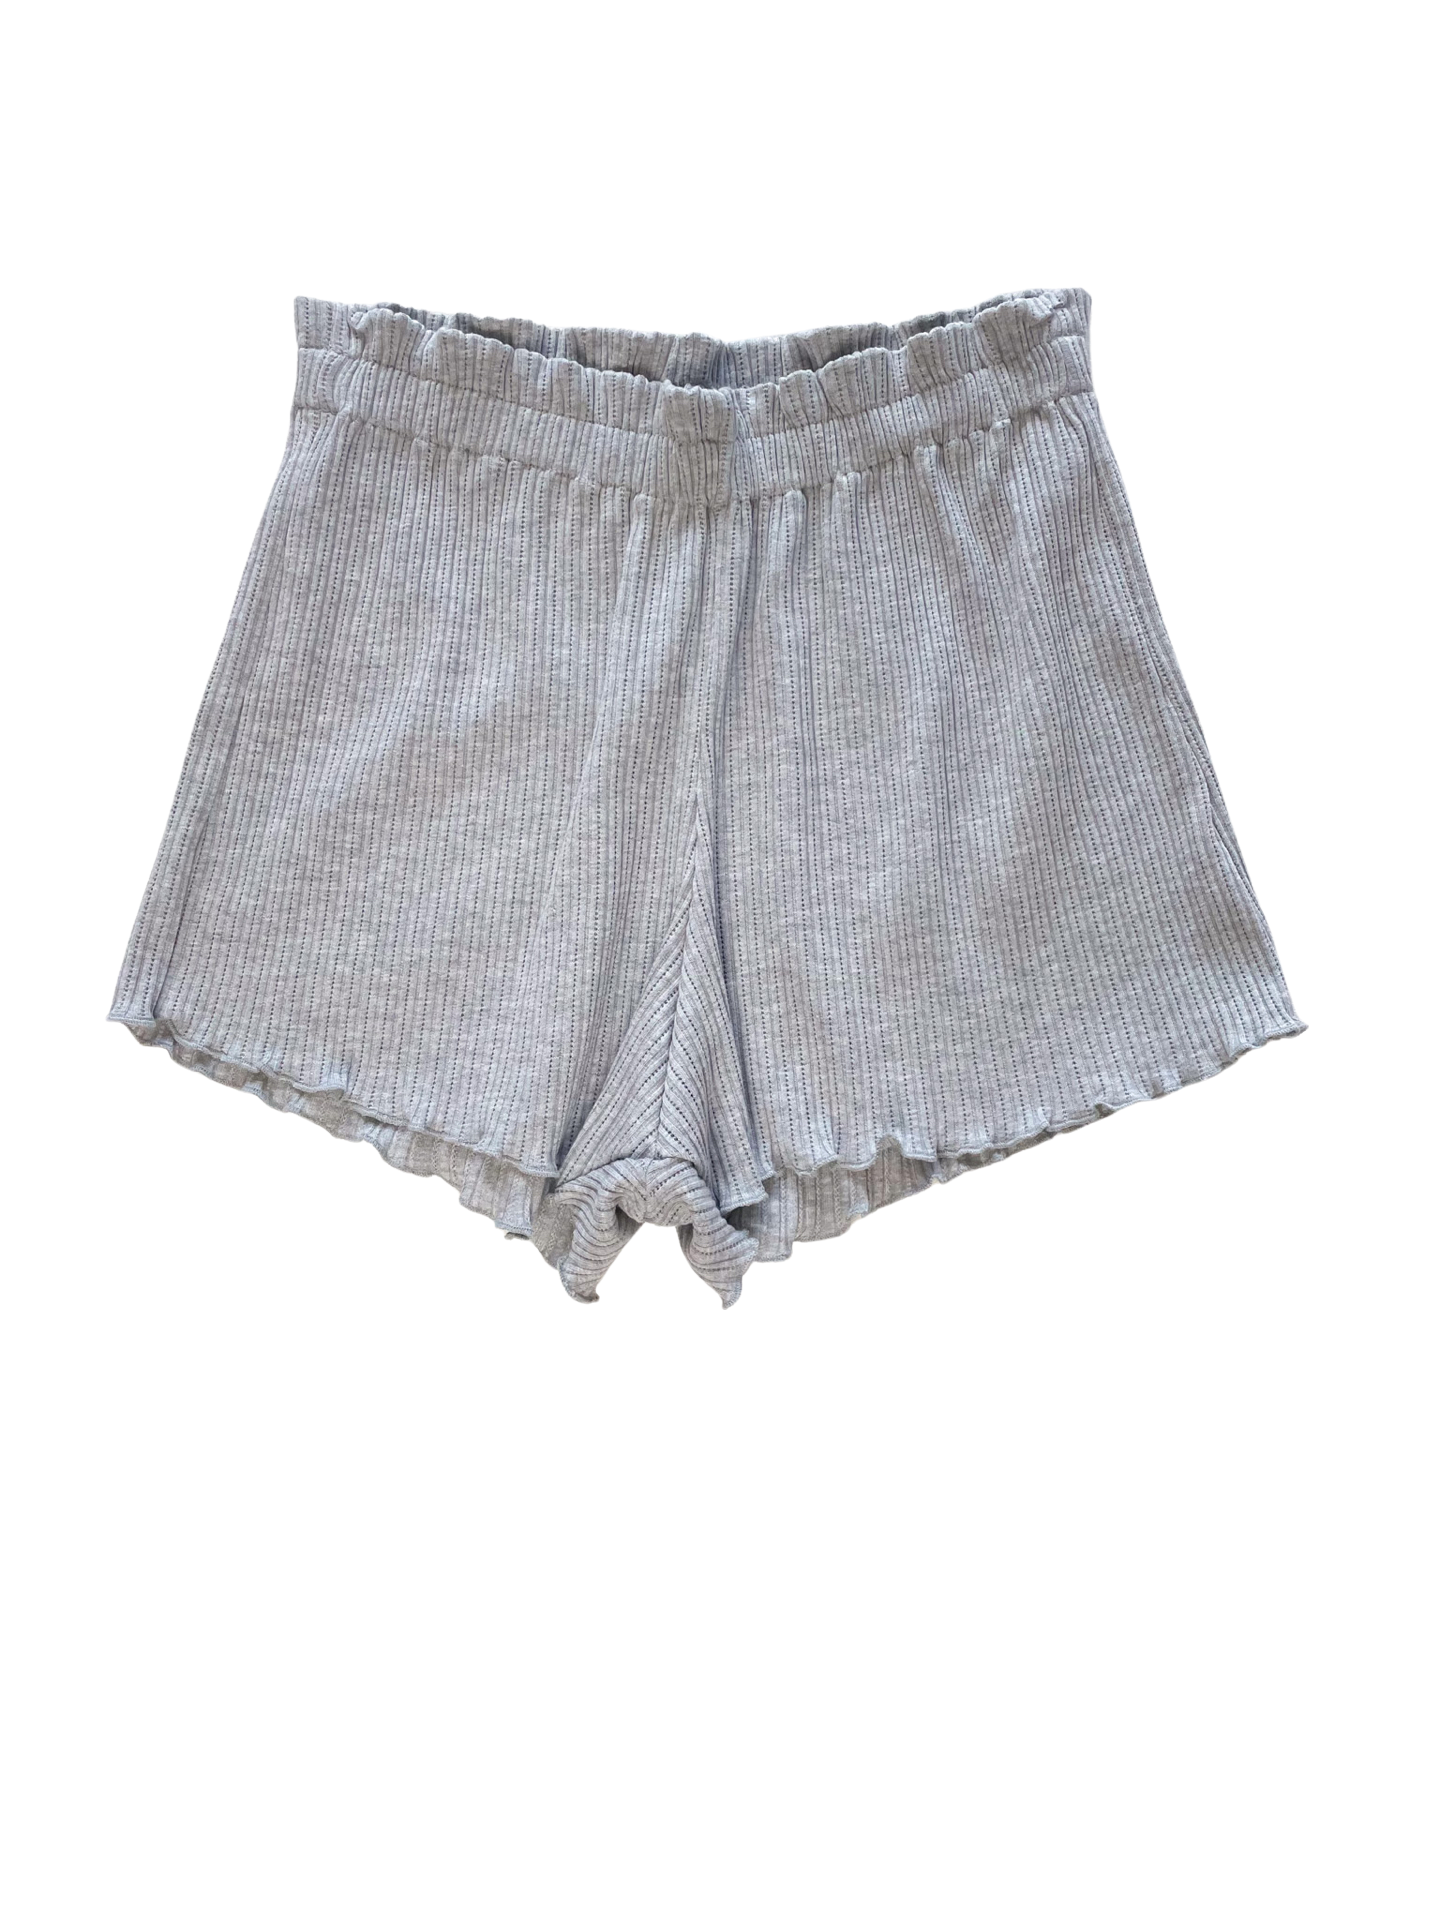 Pointoille ruffle shorts / melange grey